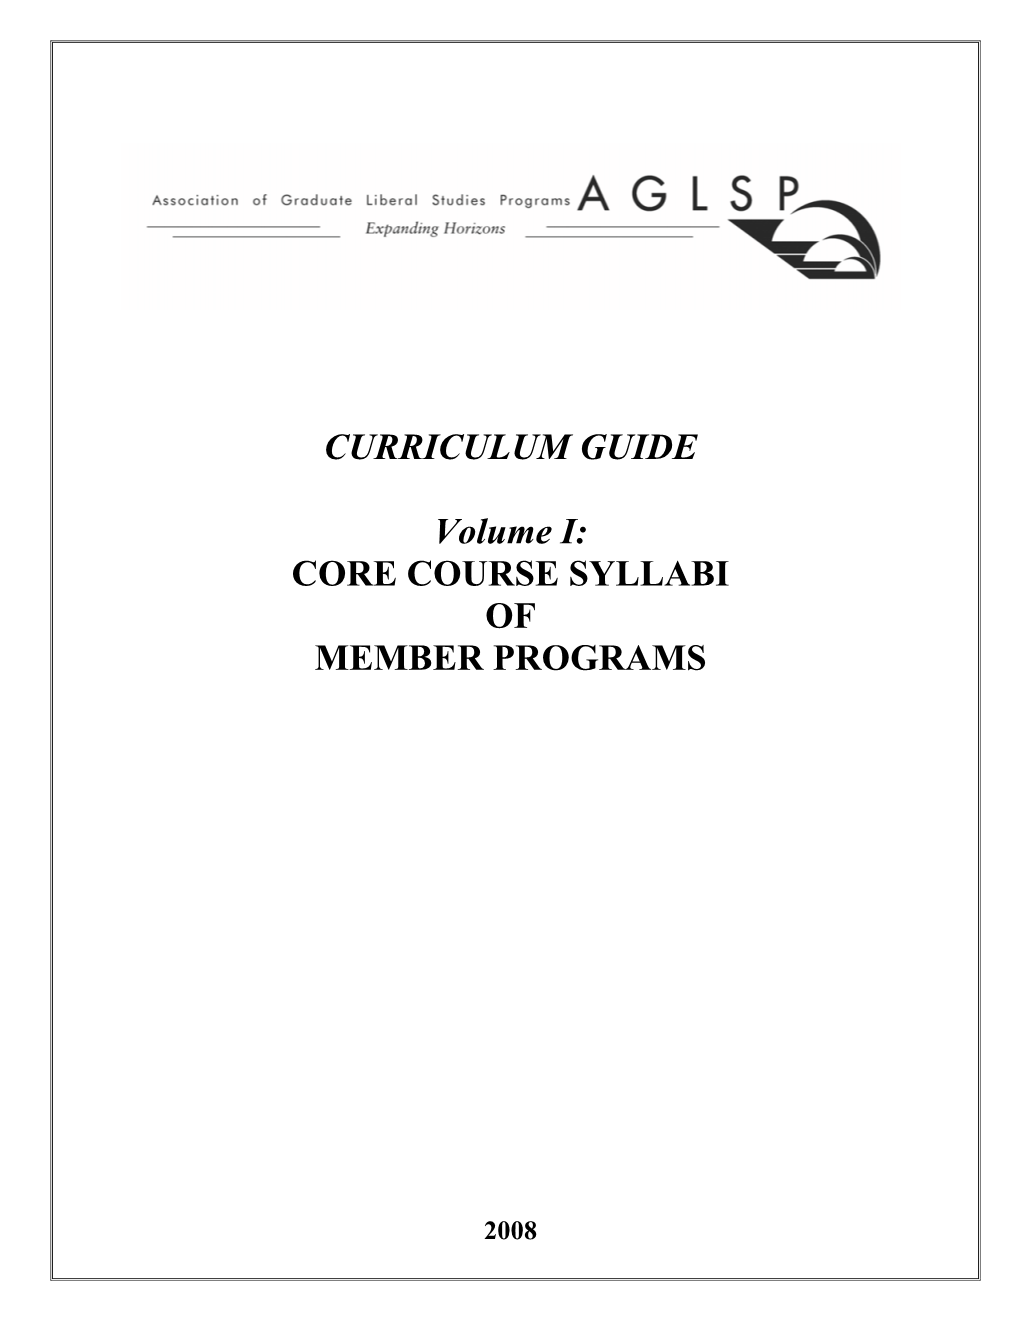 Core Course Syllabi of Member Programs